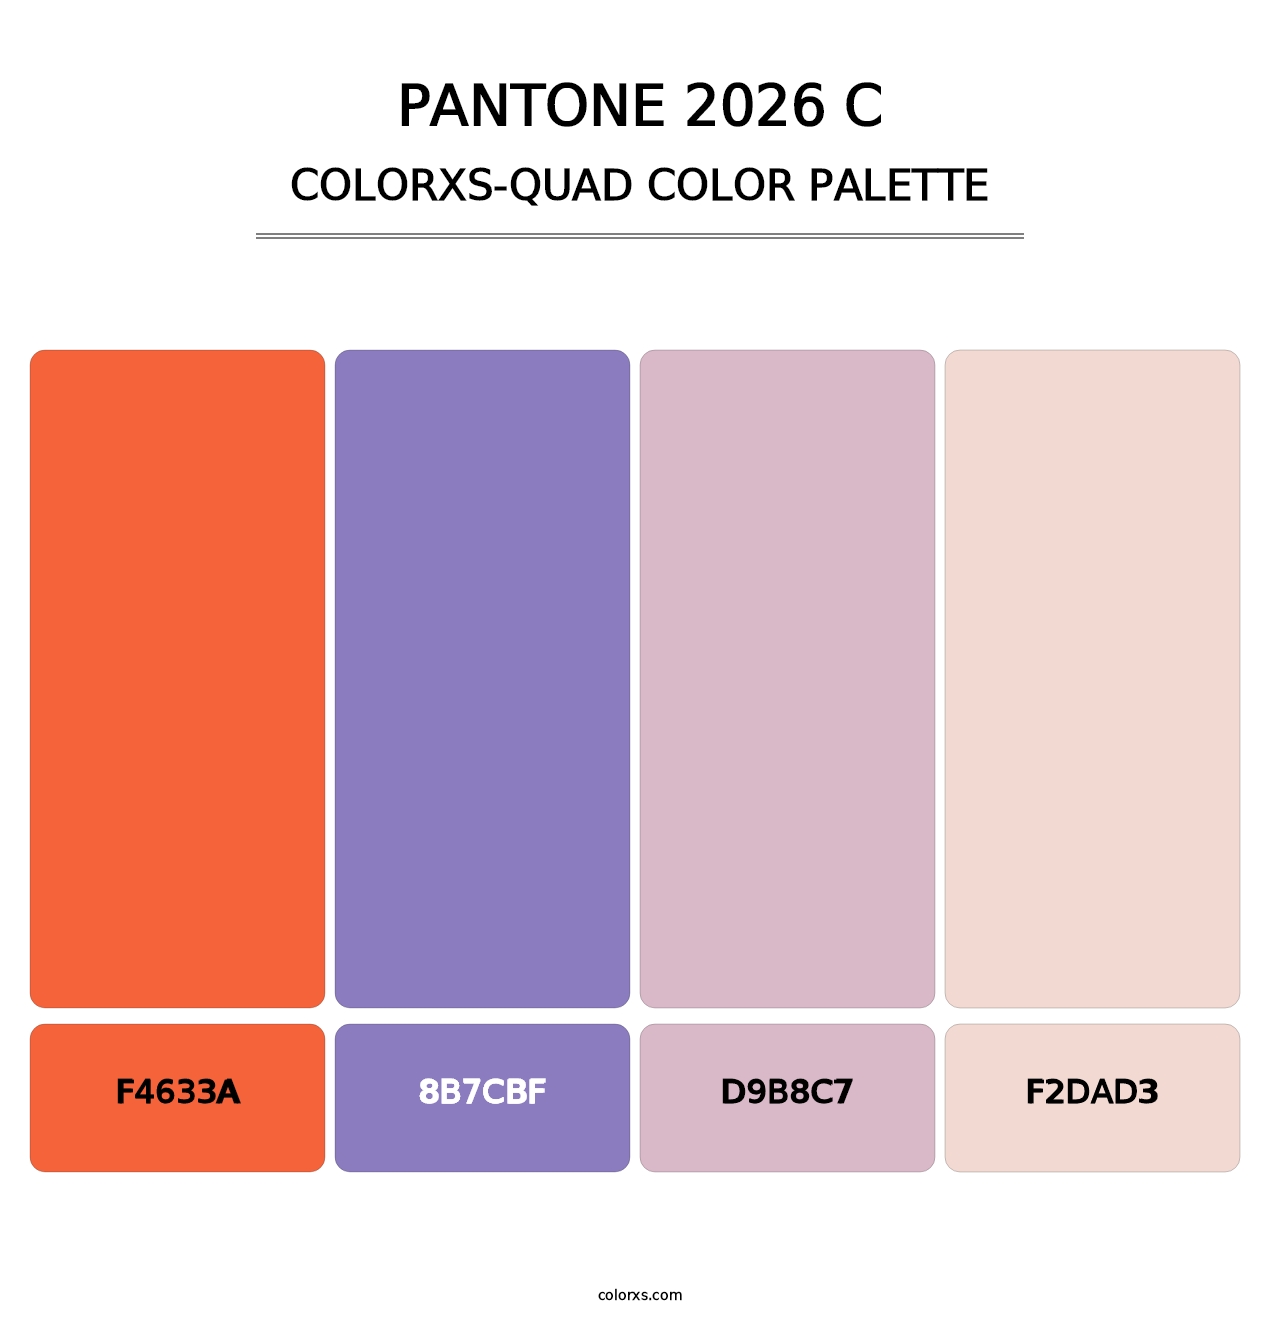 PANTONE 2026 C - Colorxs Quad Palette